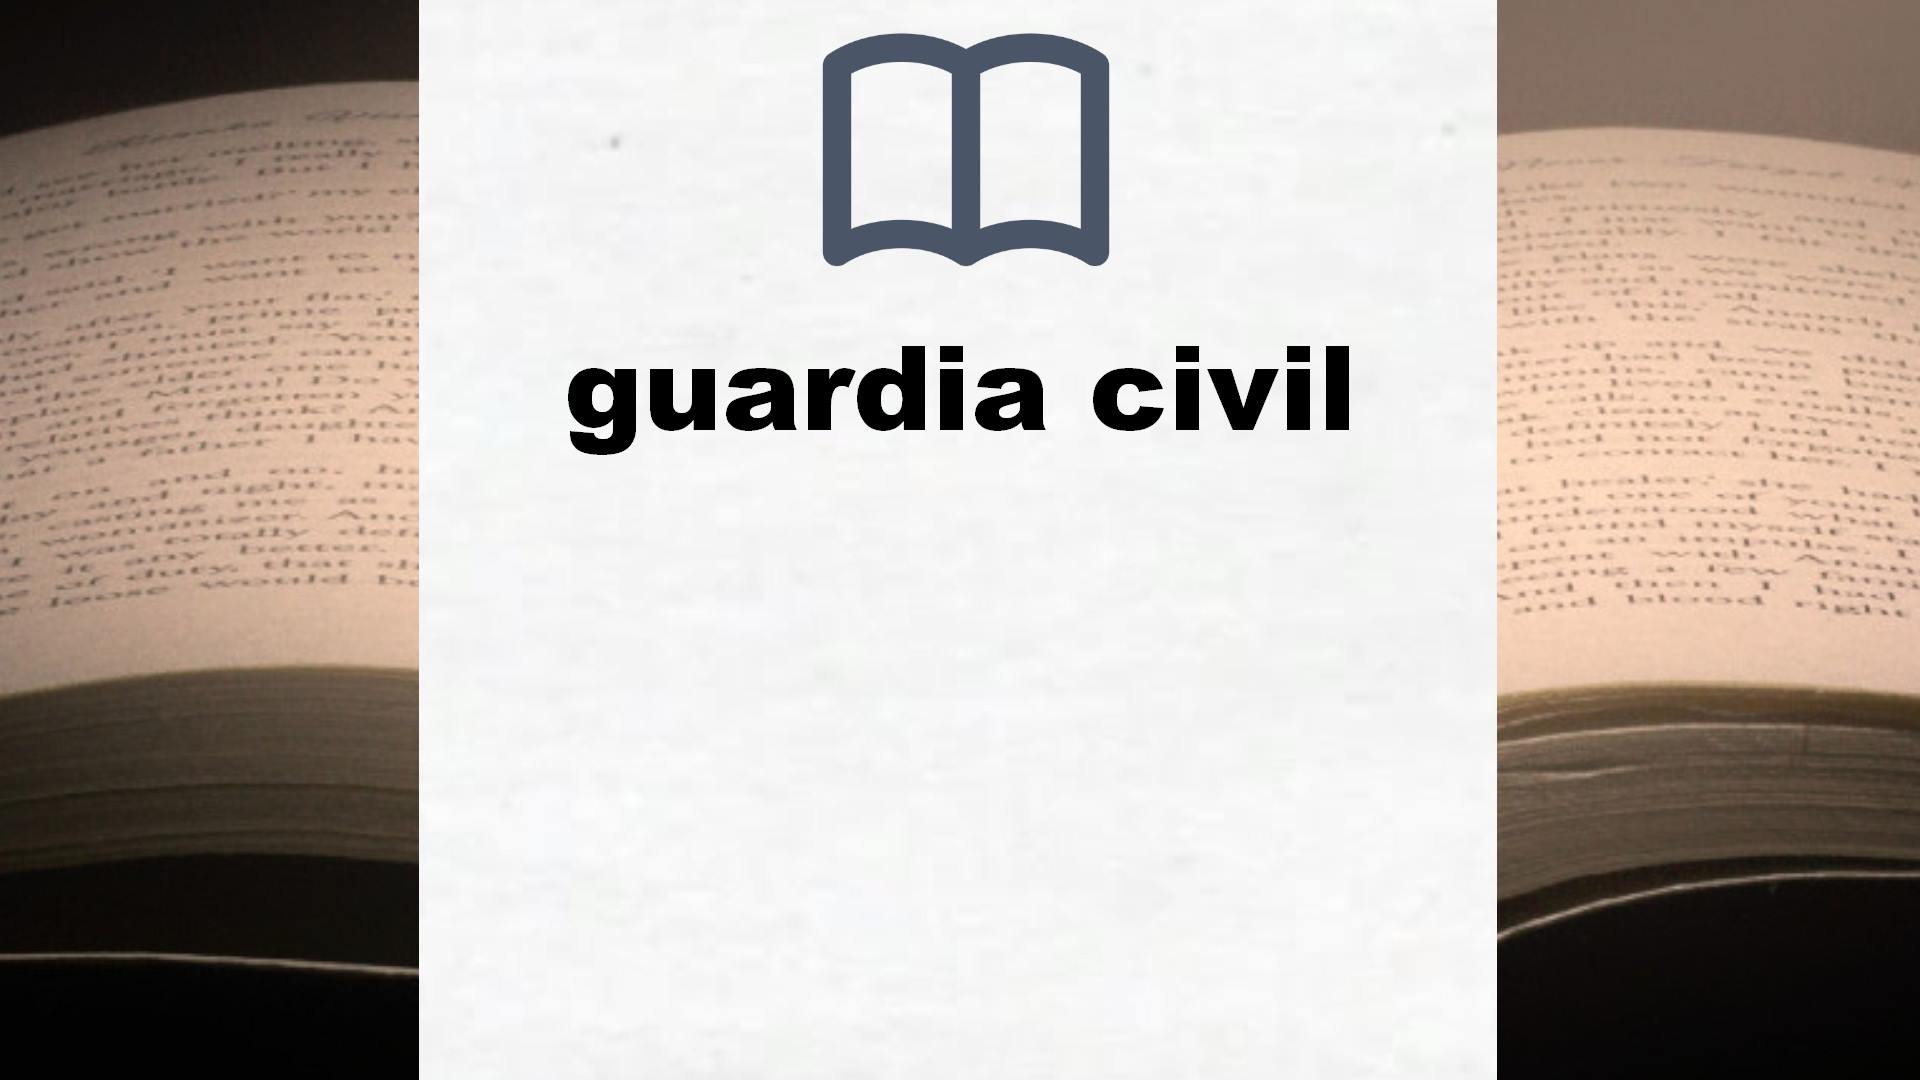 Libros sobre guardia civil